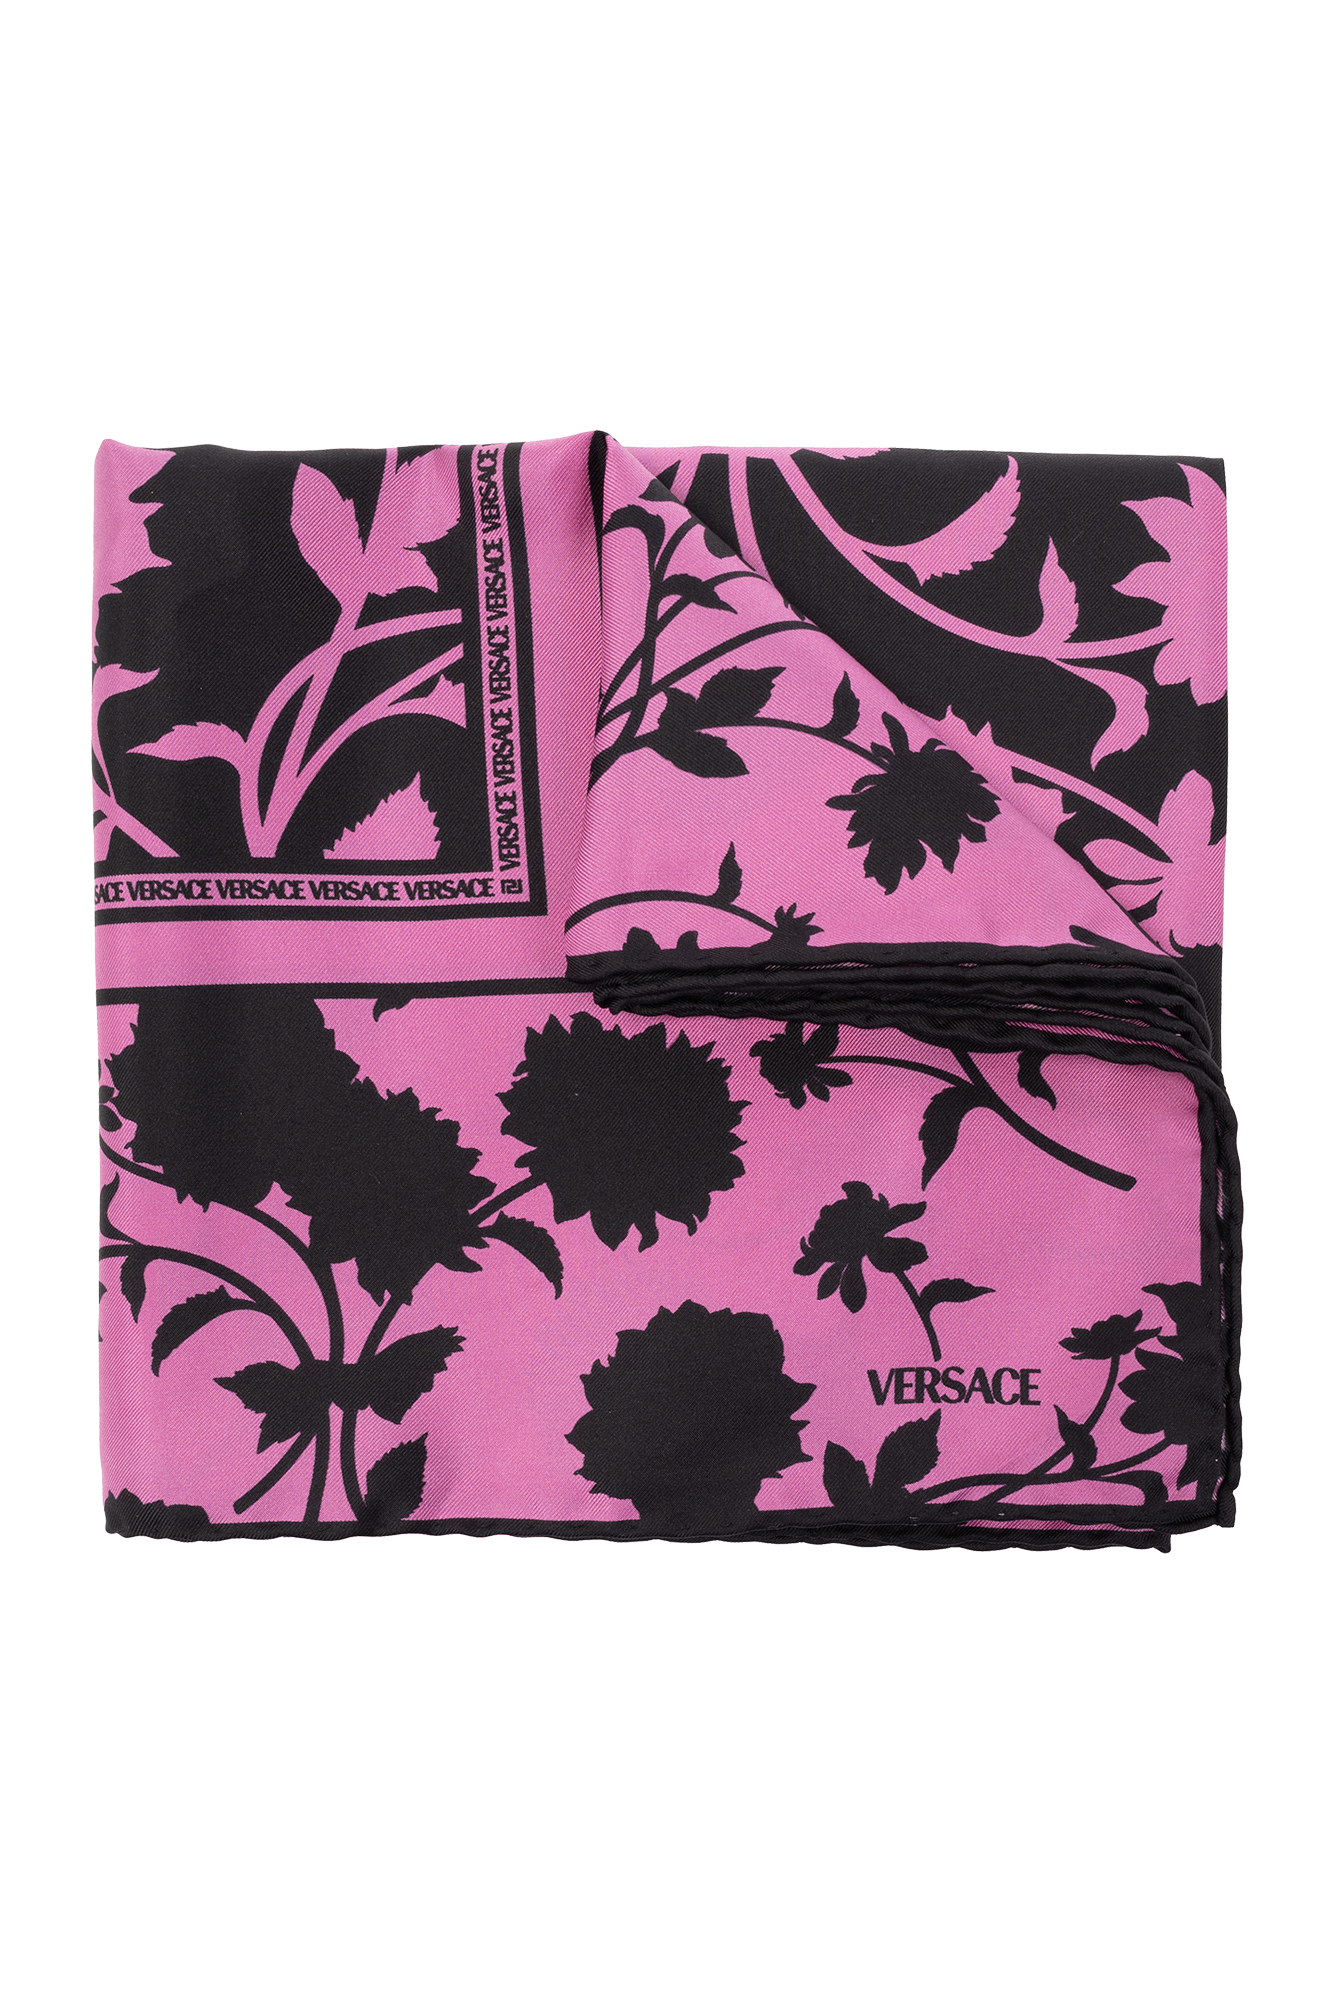 Versace Jungle Print Transparent Tote Bag In Pink